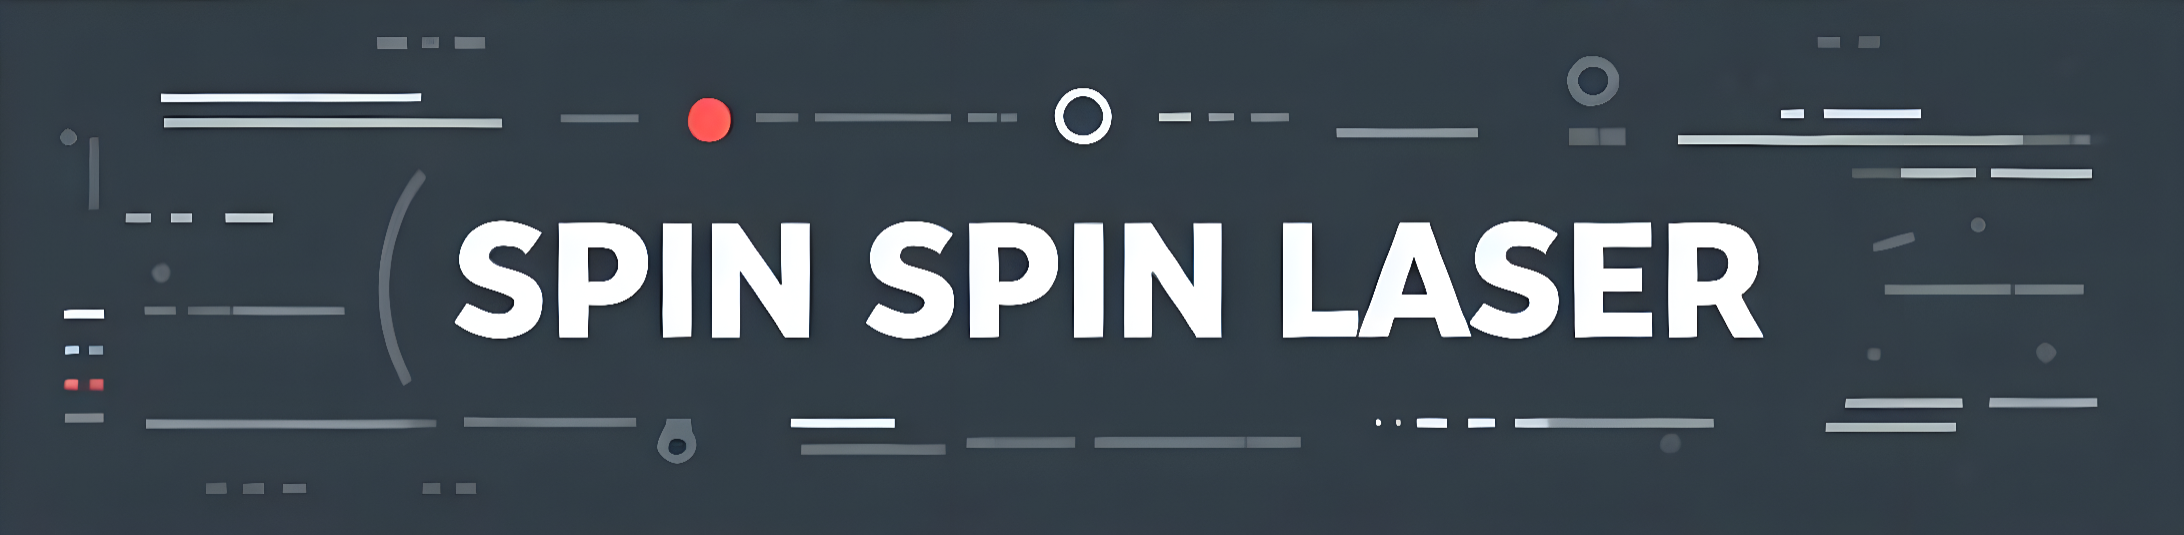 Spin Spin Laser